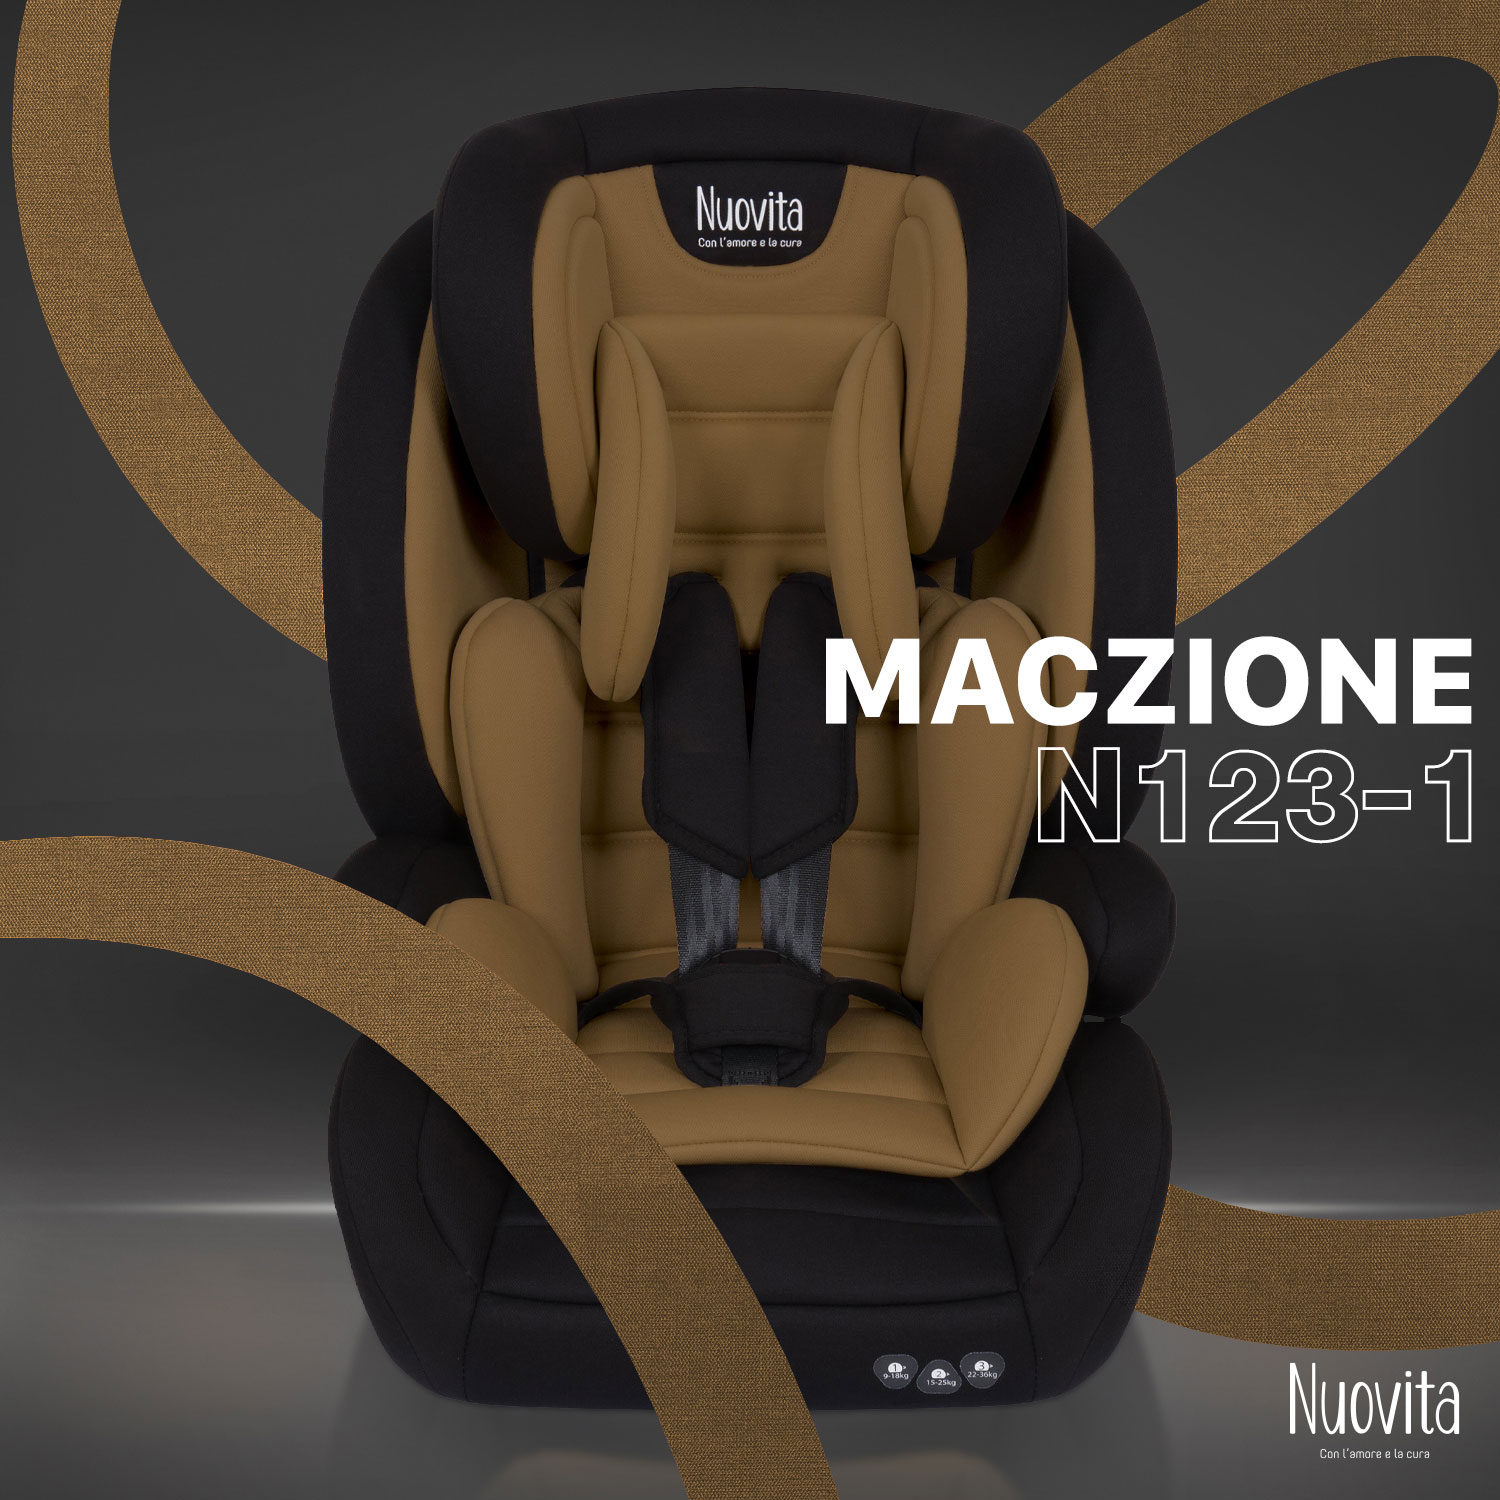 Детское автокресло трансформер Nuovita Maczione N123-1, группа 1-2-3, 9-36 кг (Кофейный) 120 на 80 как нормализовать давление в любом возрасте